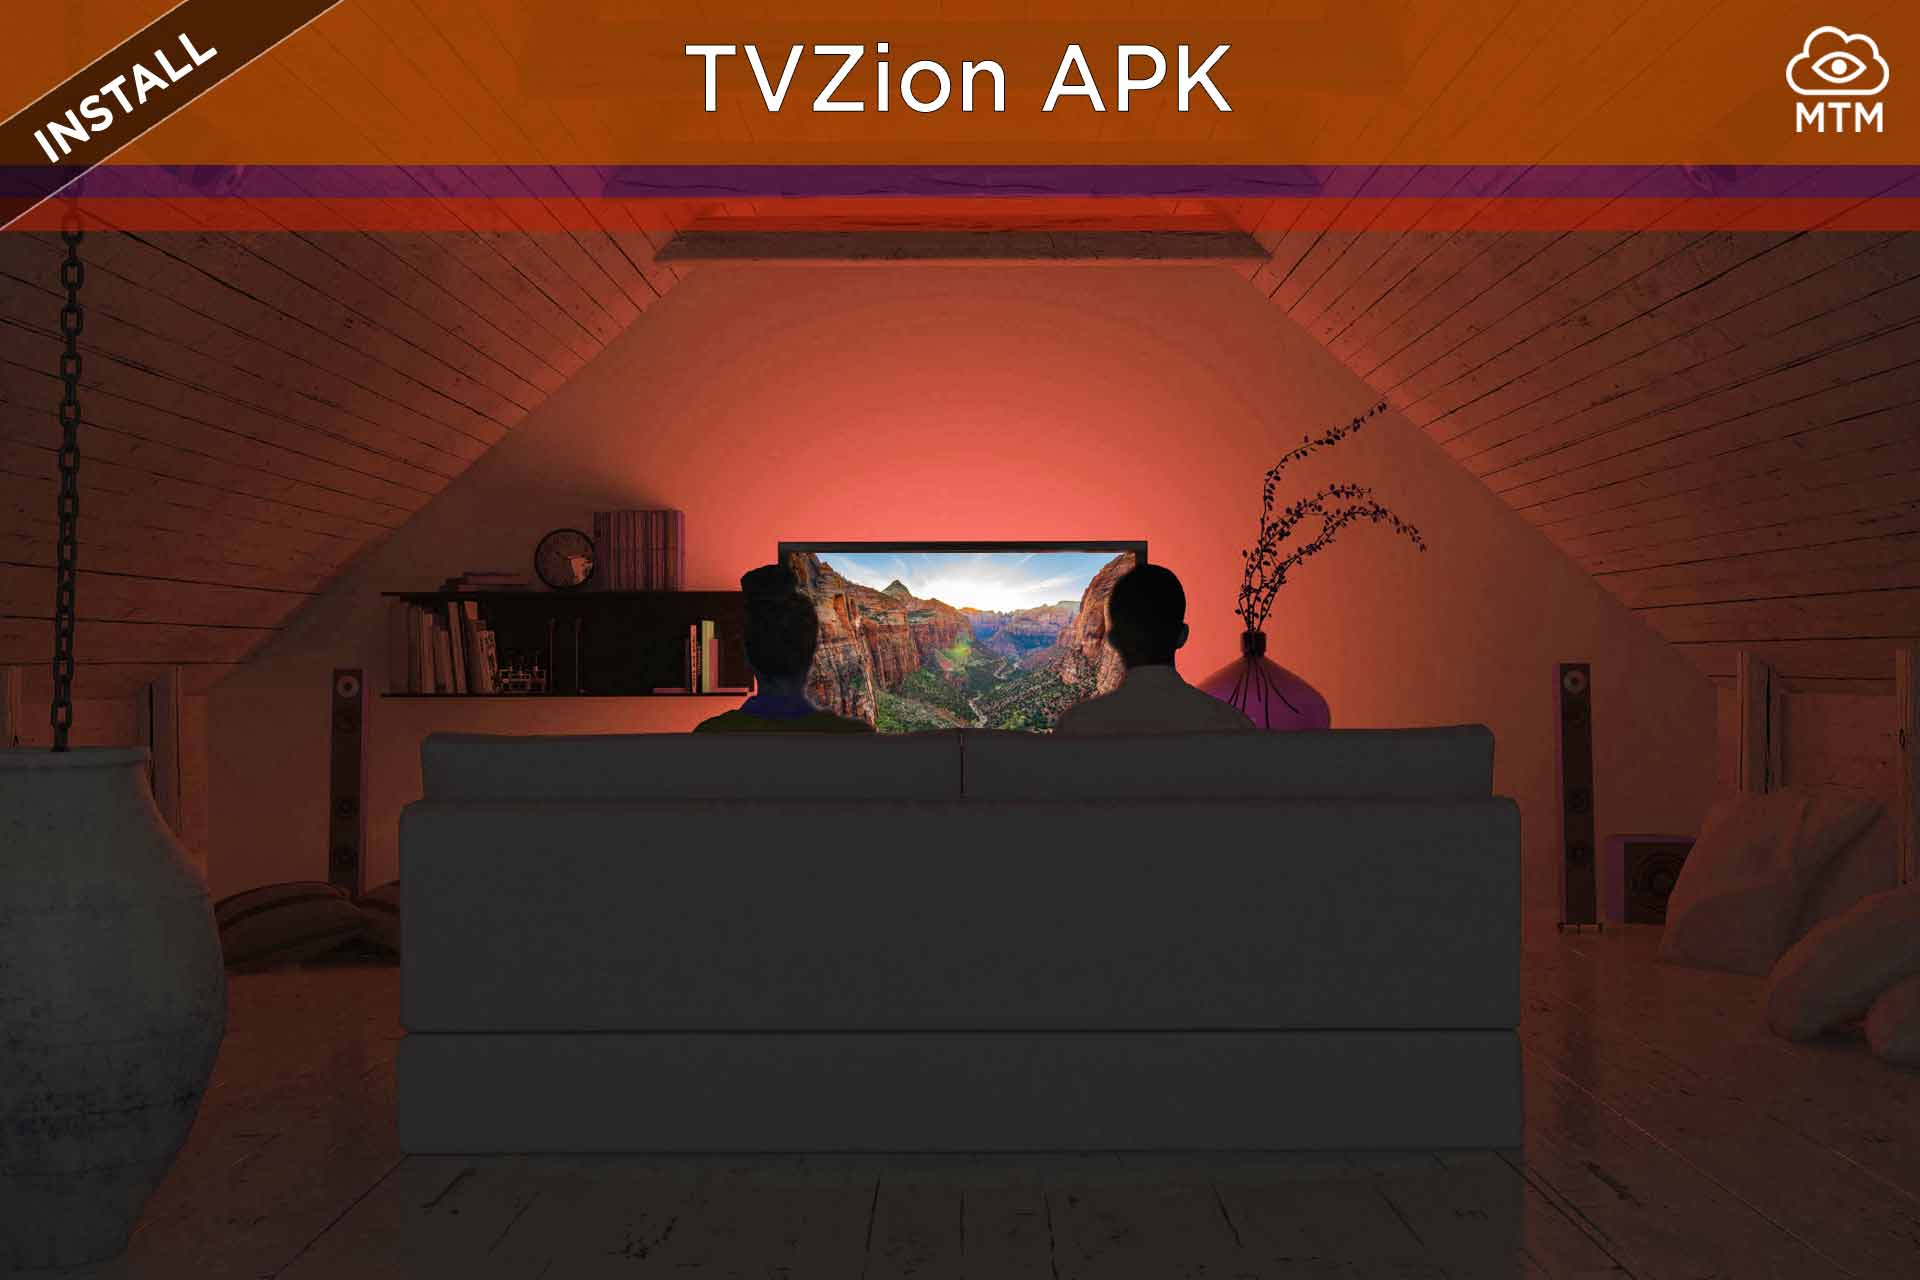 Deskargatu eta instalatu TVZion APK Doako Android Streaming aplikazioa Firestick-en